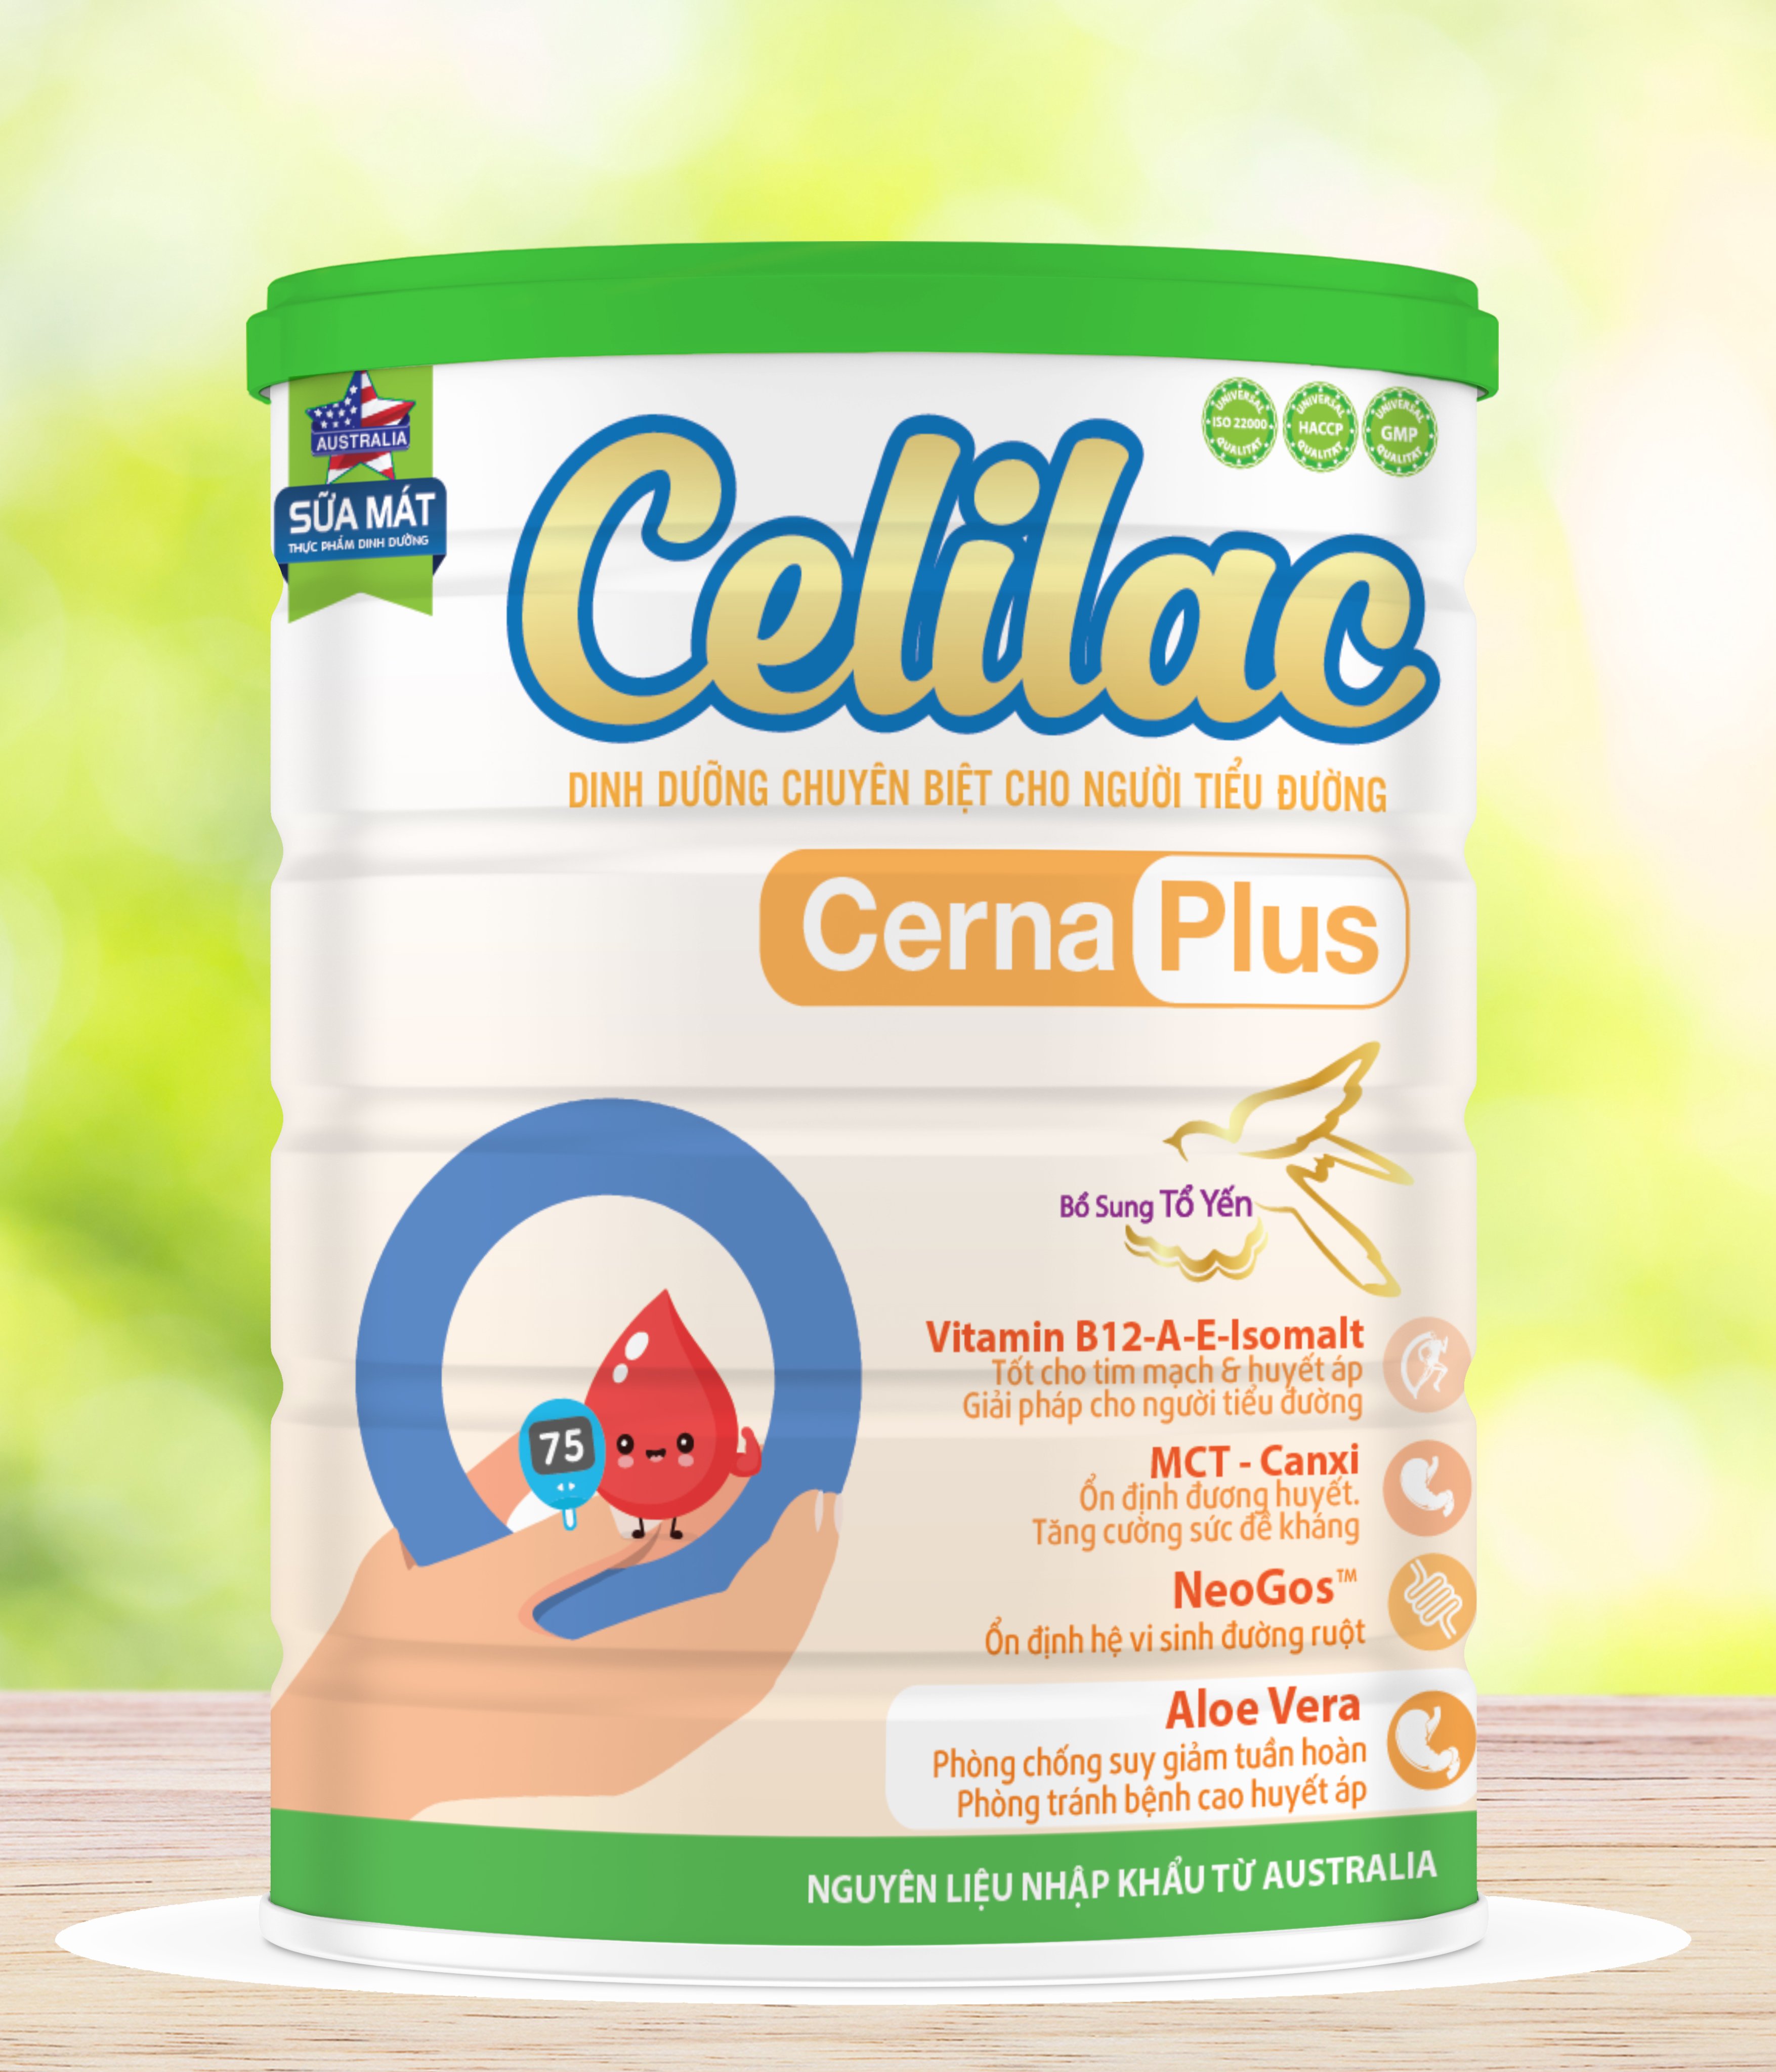 Sữa mát Celilac CERNA PLUS Dành cho người tiểu đường và tiền đái tháo